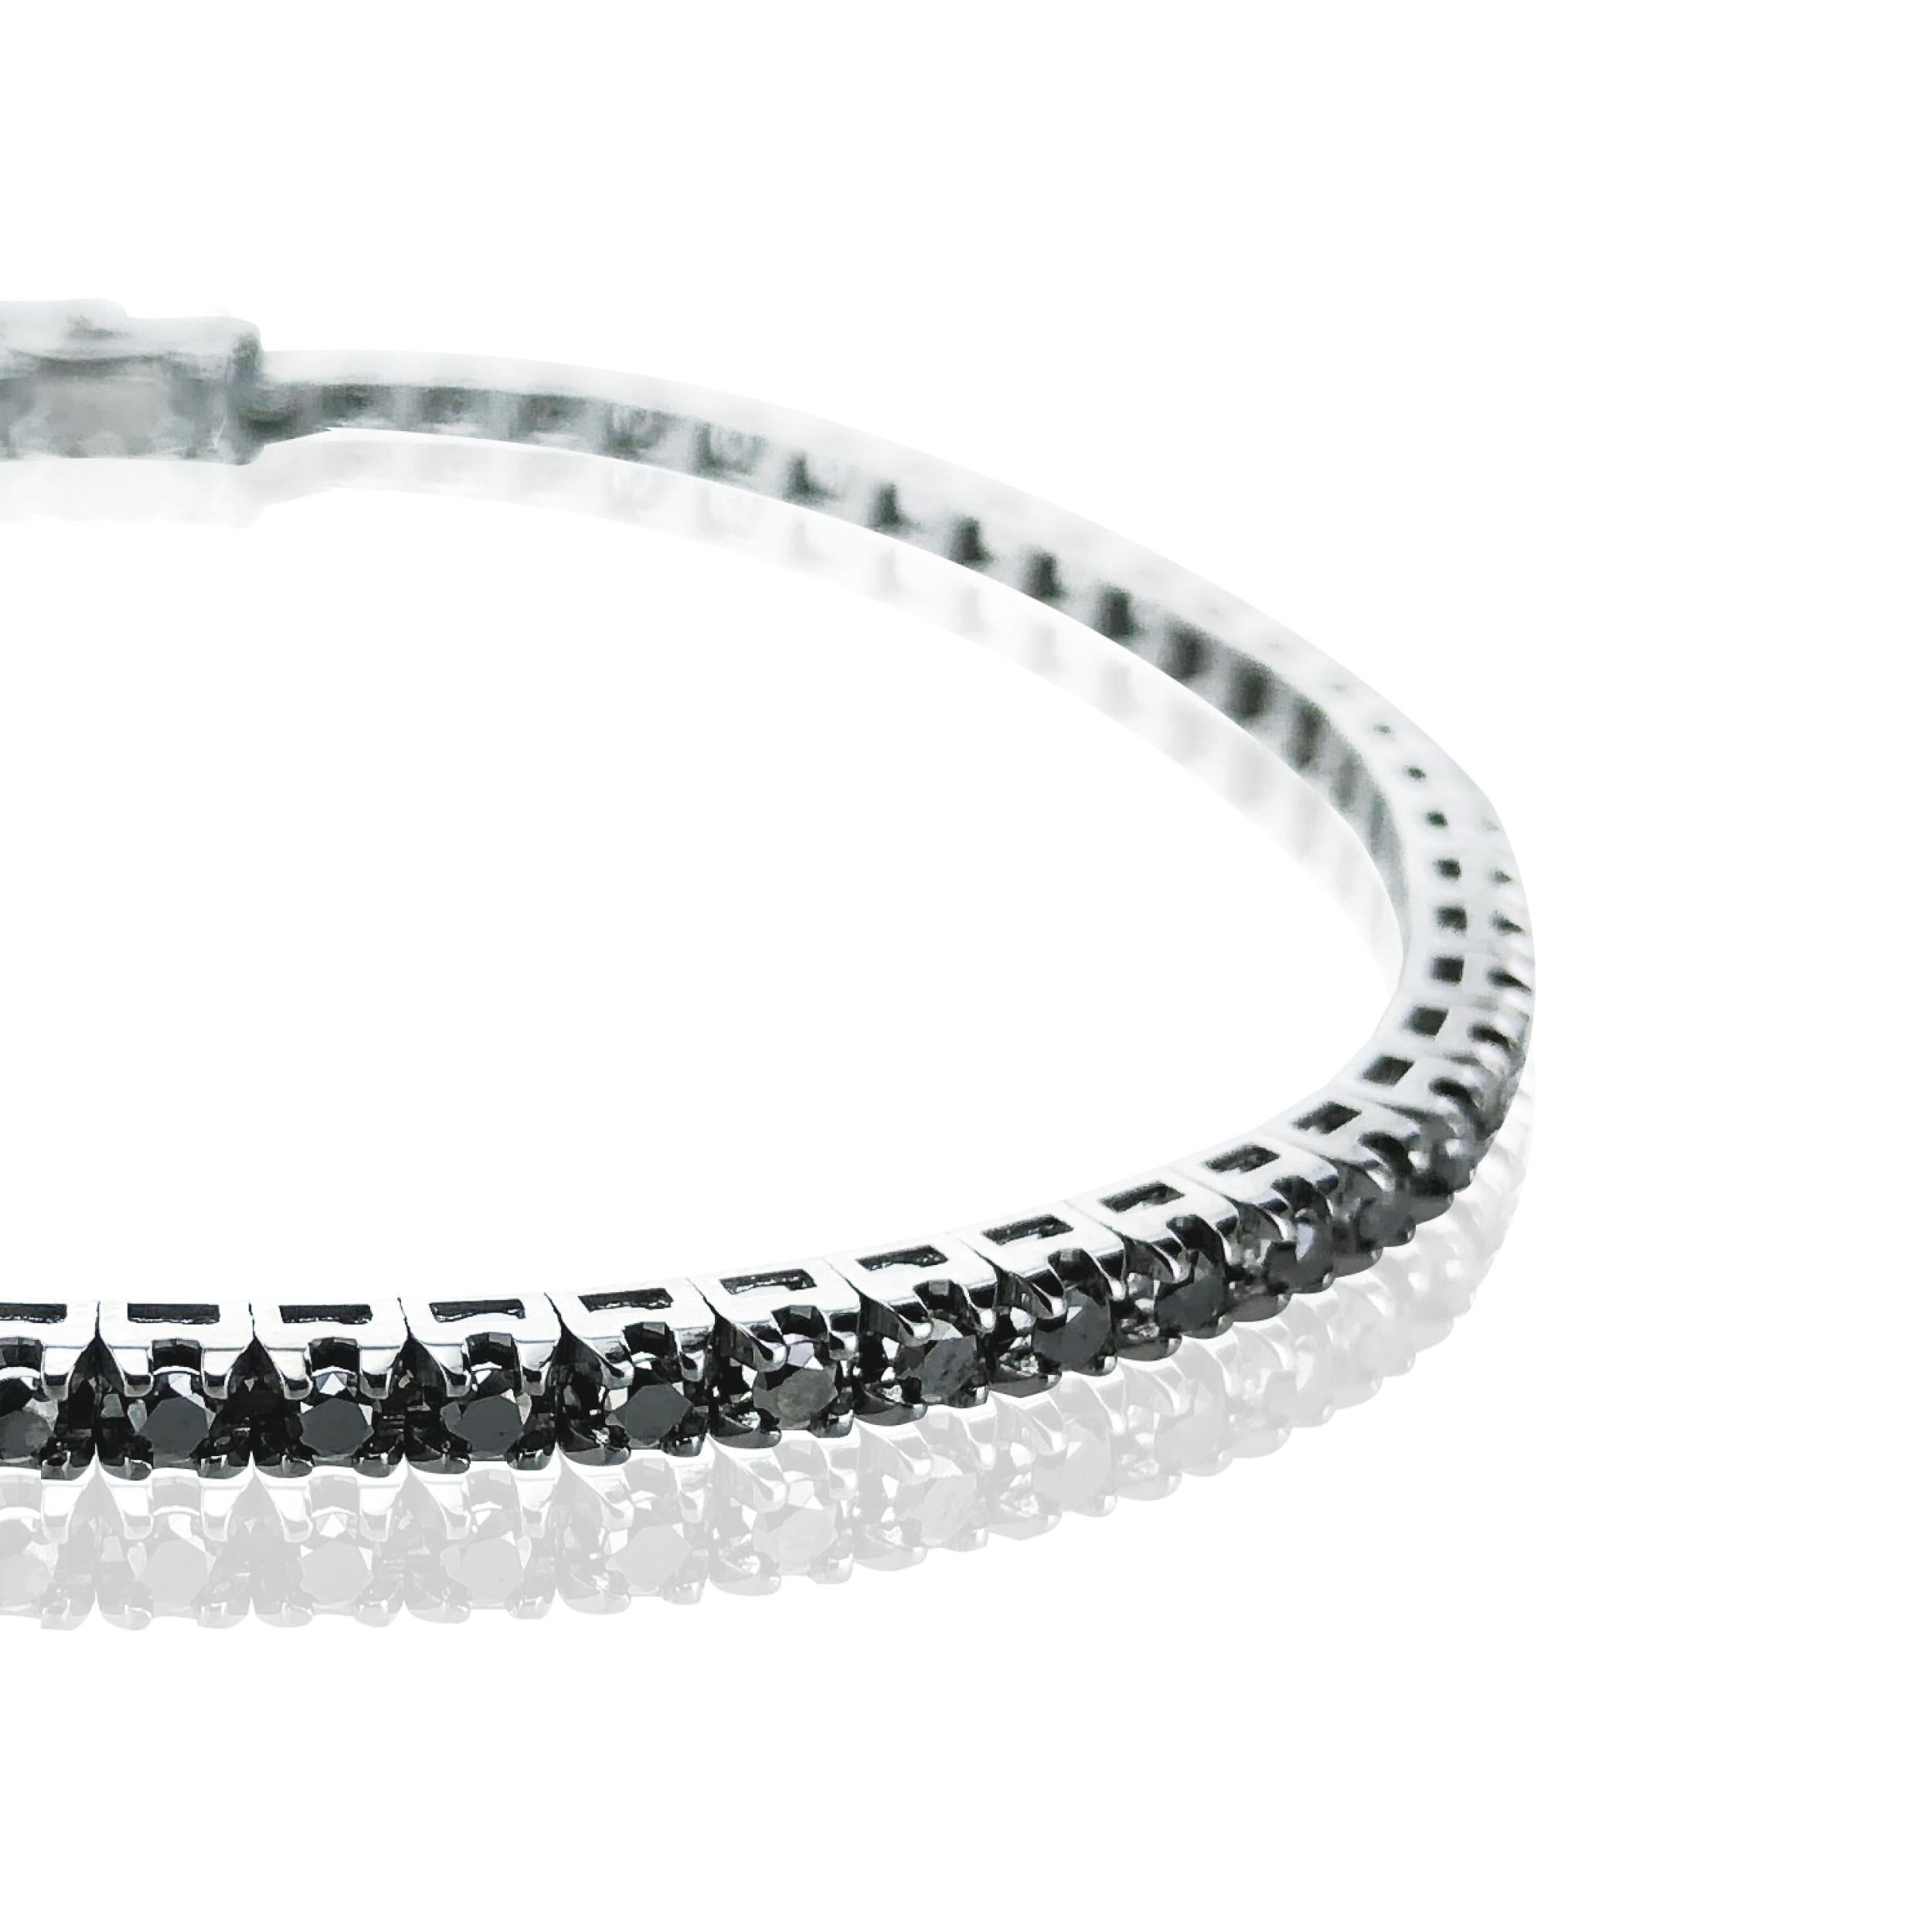 Dieses 4,82 Karat schwere Unisex-Tennisarmband mit schwarzen Diamanten ist ein atemberaubendes Statement für das Handgelenk beider Geschlechter. 

Er ist aus 18-karätigem Schwarzgold gefertigt und schmückt sowohl die Tages- als auch die